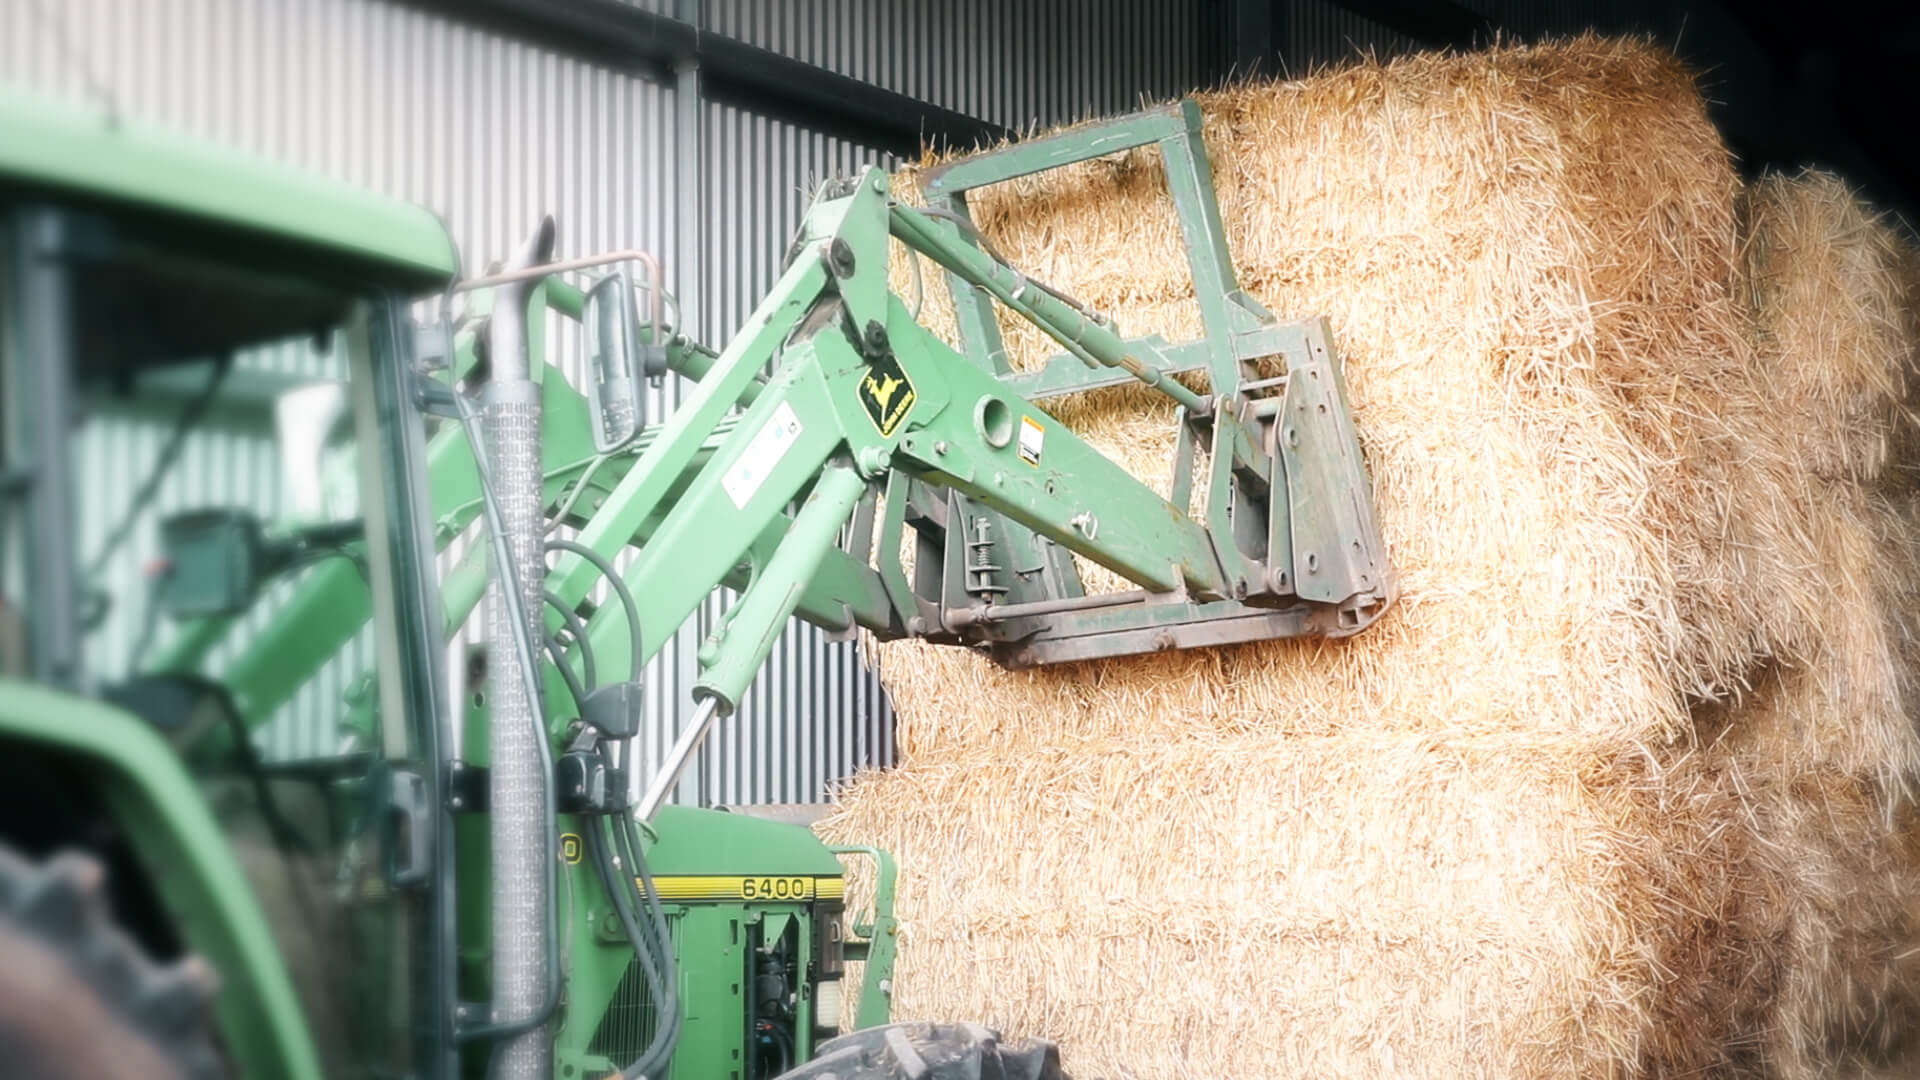 Telehandler stacking hay bales